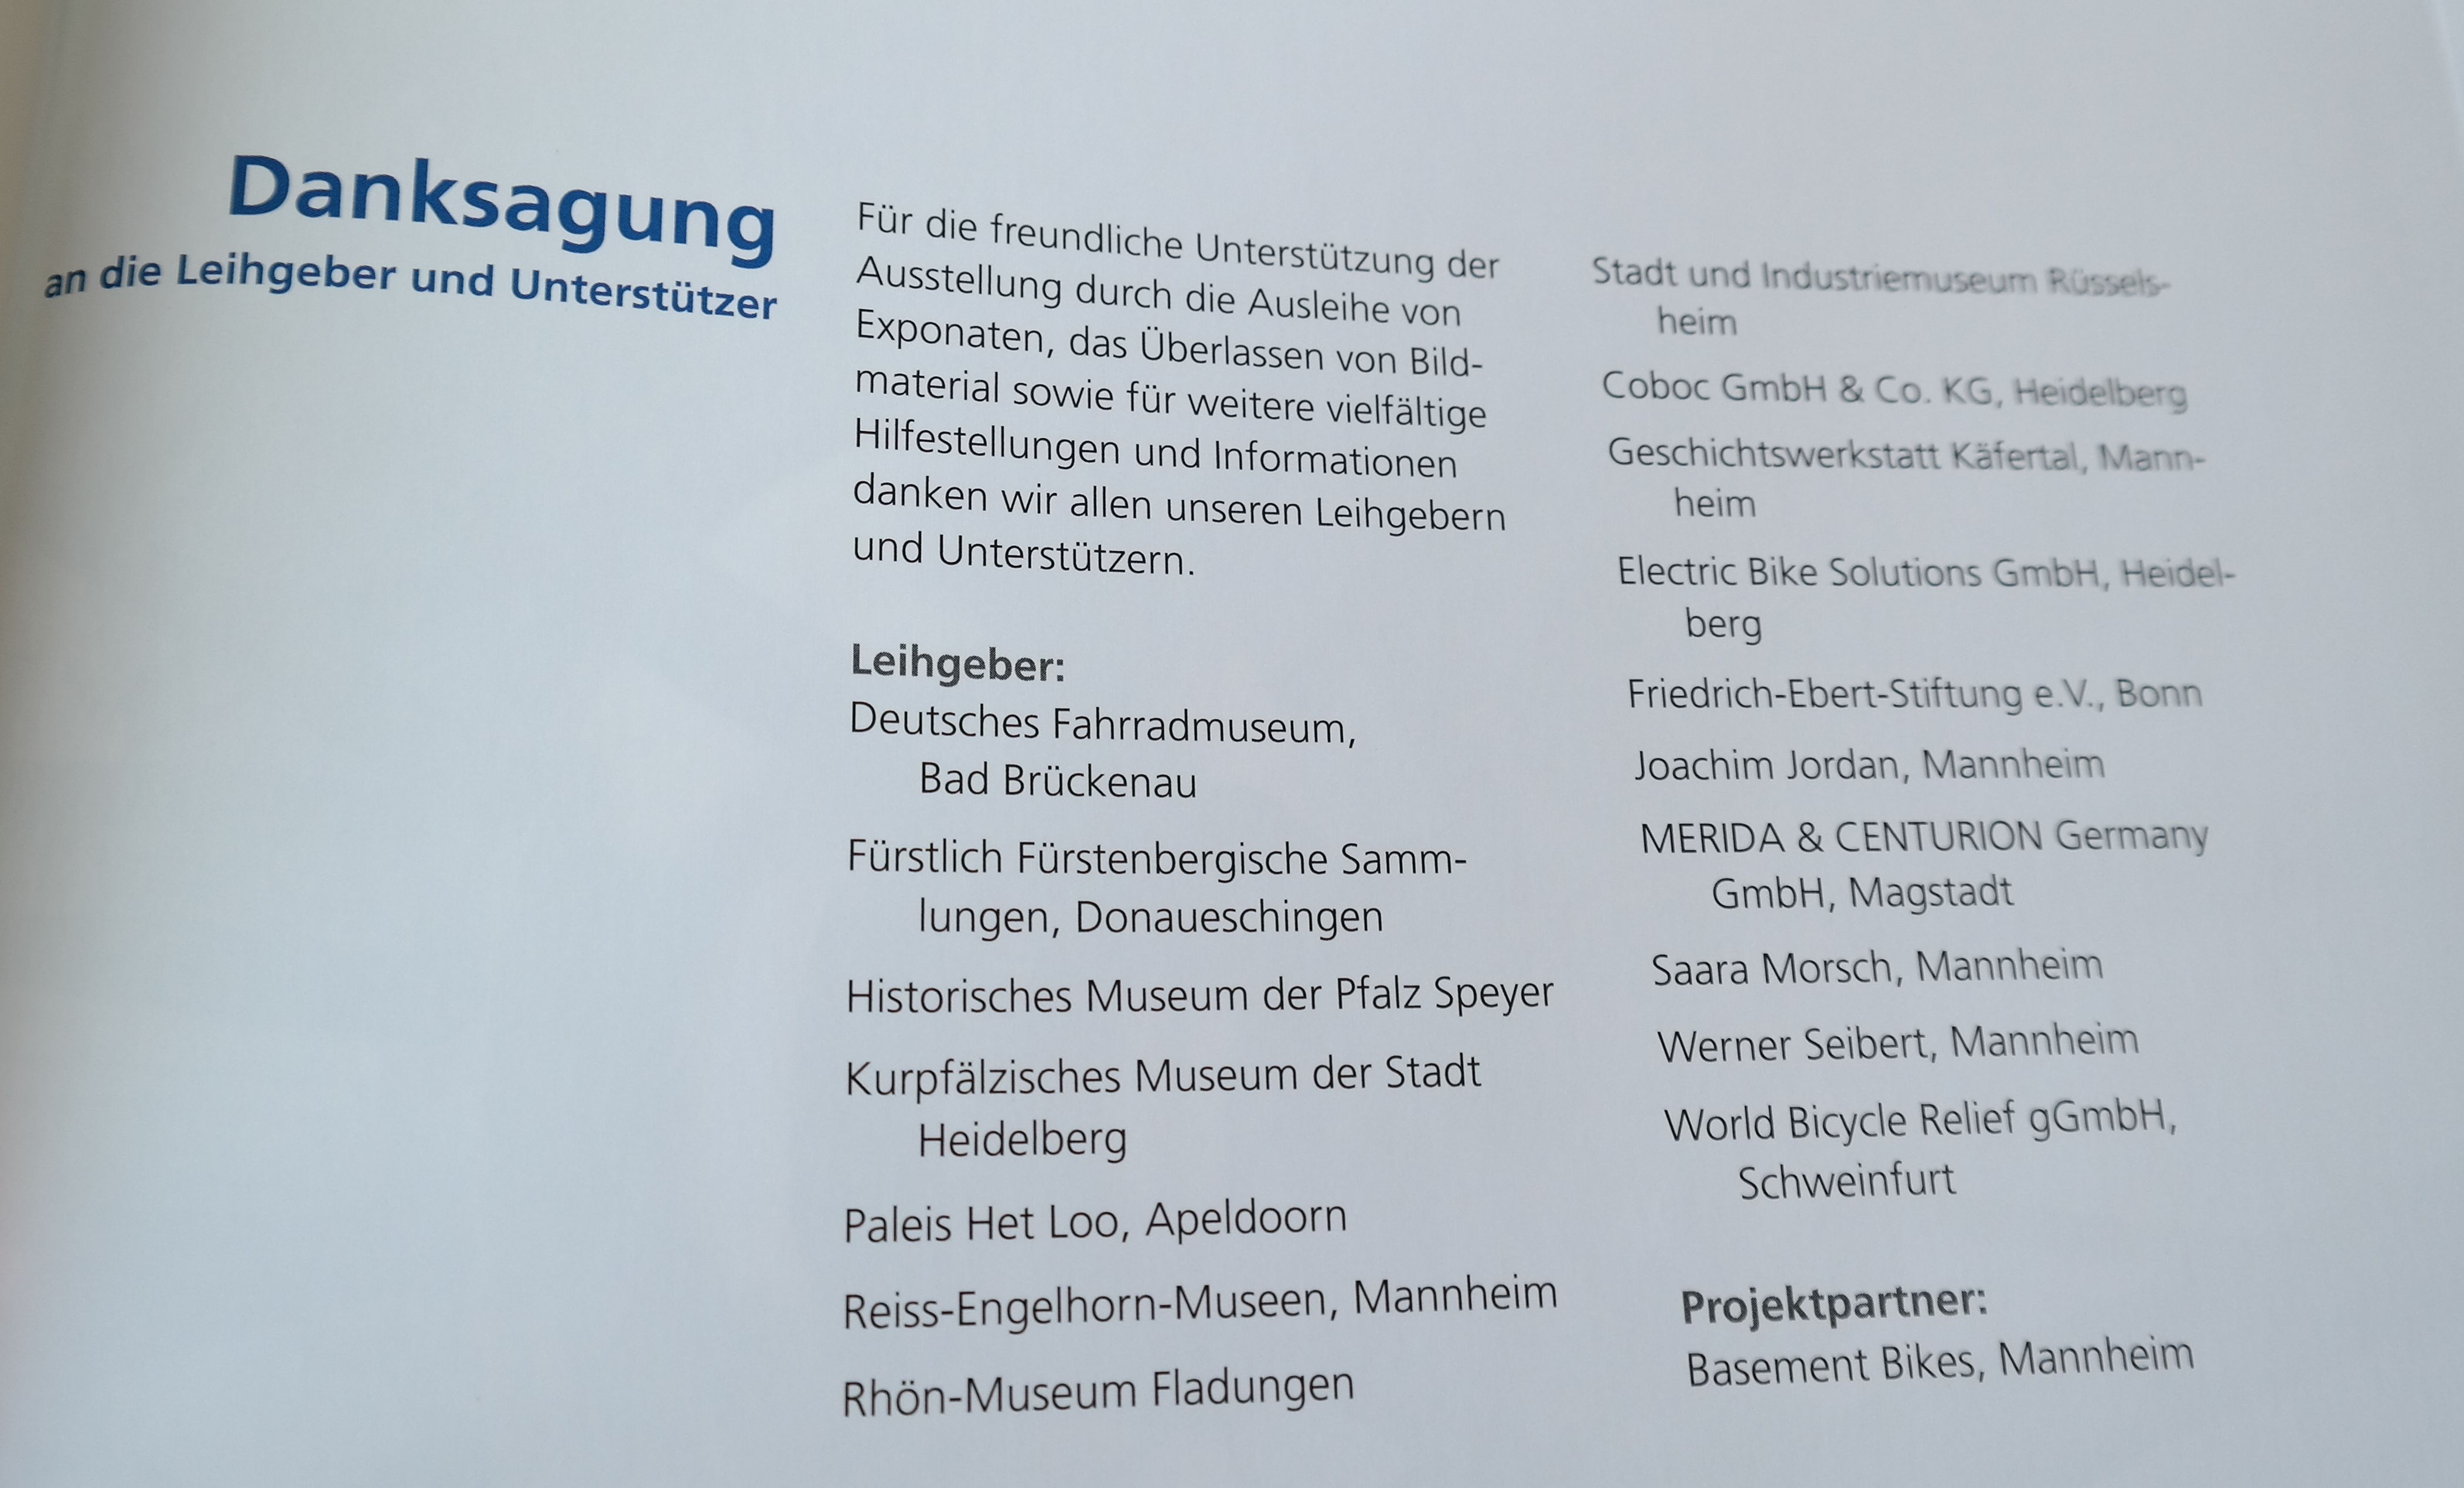 Die Ausstellung sowie das dazugehörige Begleitbuch wurde unter anderem durch Leihgaben vom Deutschen Fahrradmuseum sowie verschiedenen Mannheimer Institutionen ermöglicht